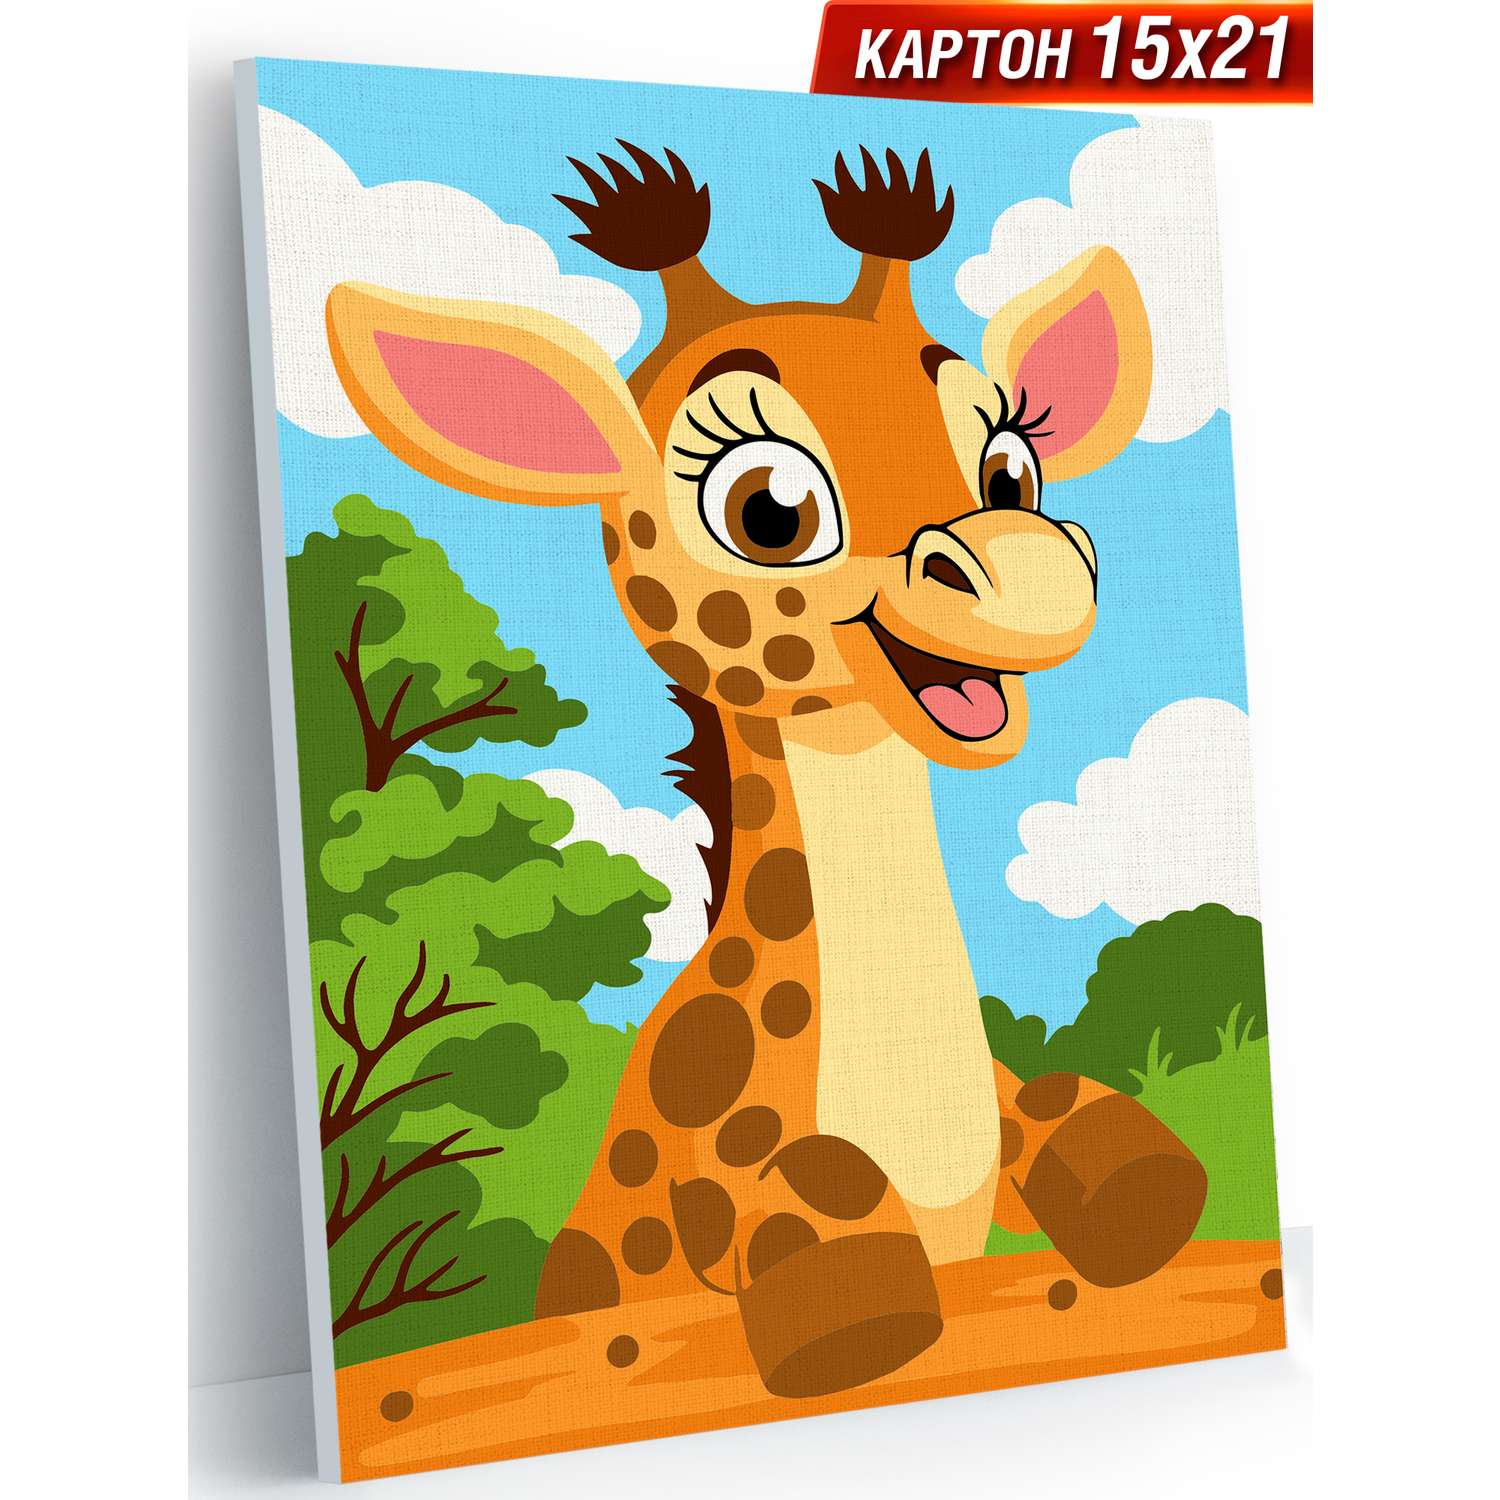 Картина по номерам Hobby Paint Серия Мини 15х21 Приветливый жирафик - фото 1